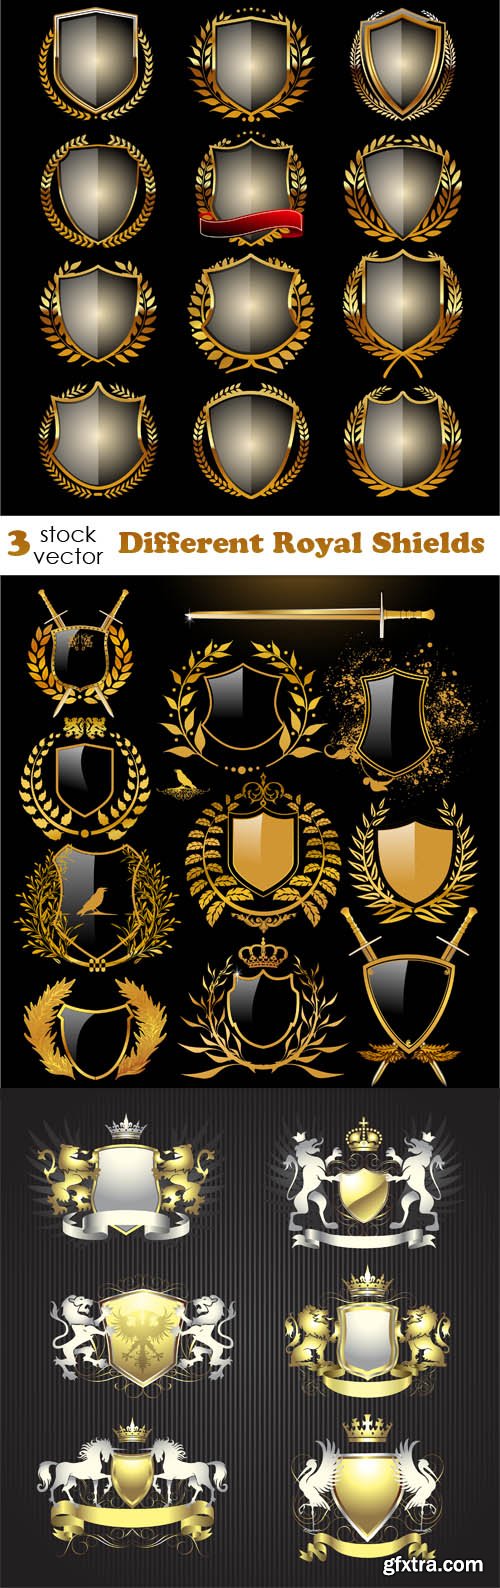 Vectors - Different Royal Shields